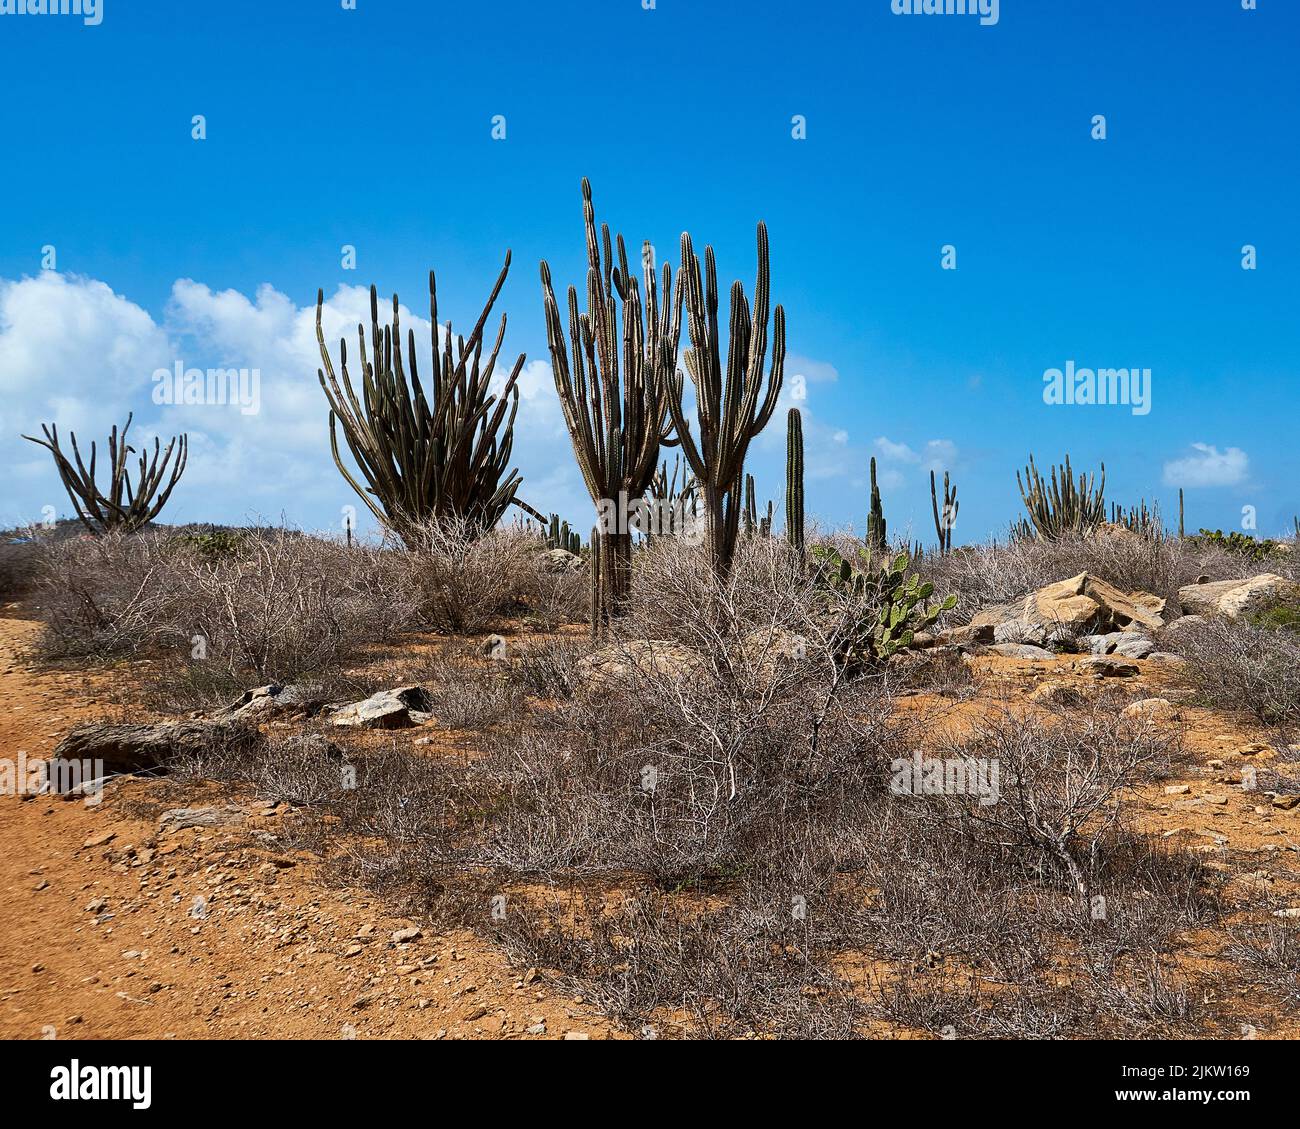 Vacanze ad Aruba. Alto cactus contro il cielo blu brillante, con un primo piano di arbusti secchi del deserto che crescono nel terreno sabbioso. Foto Stock